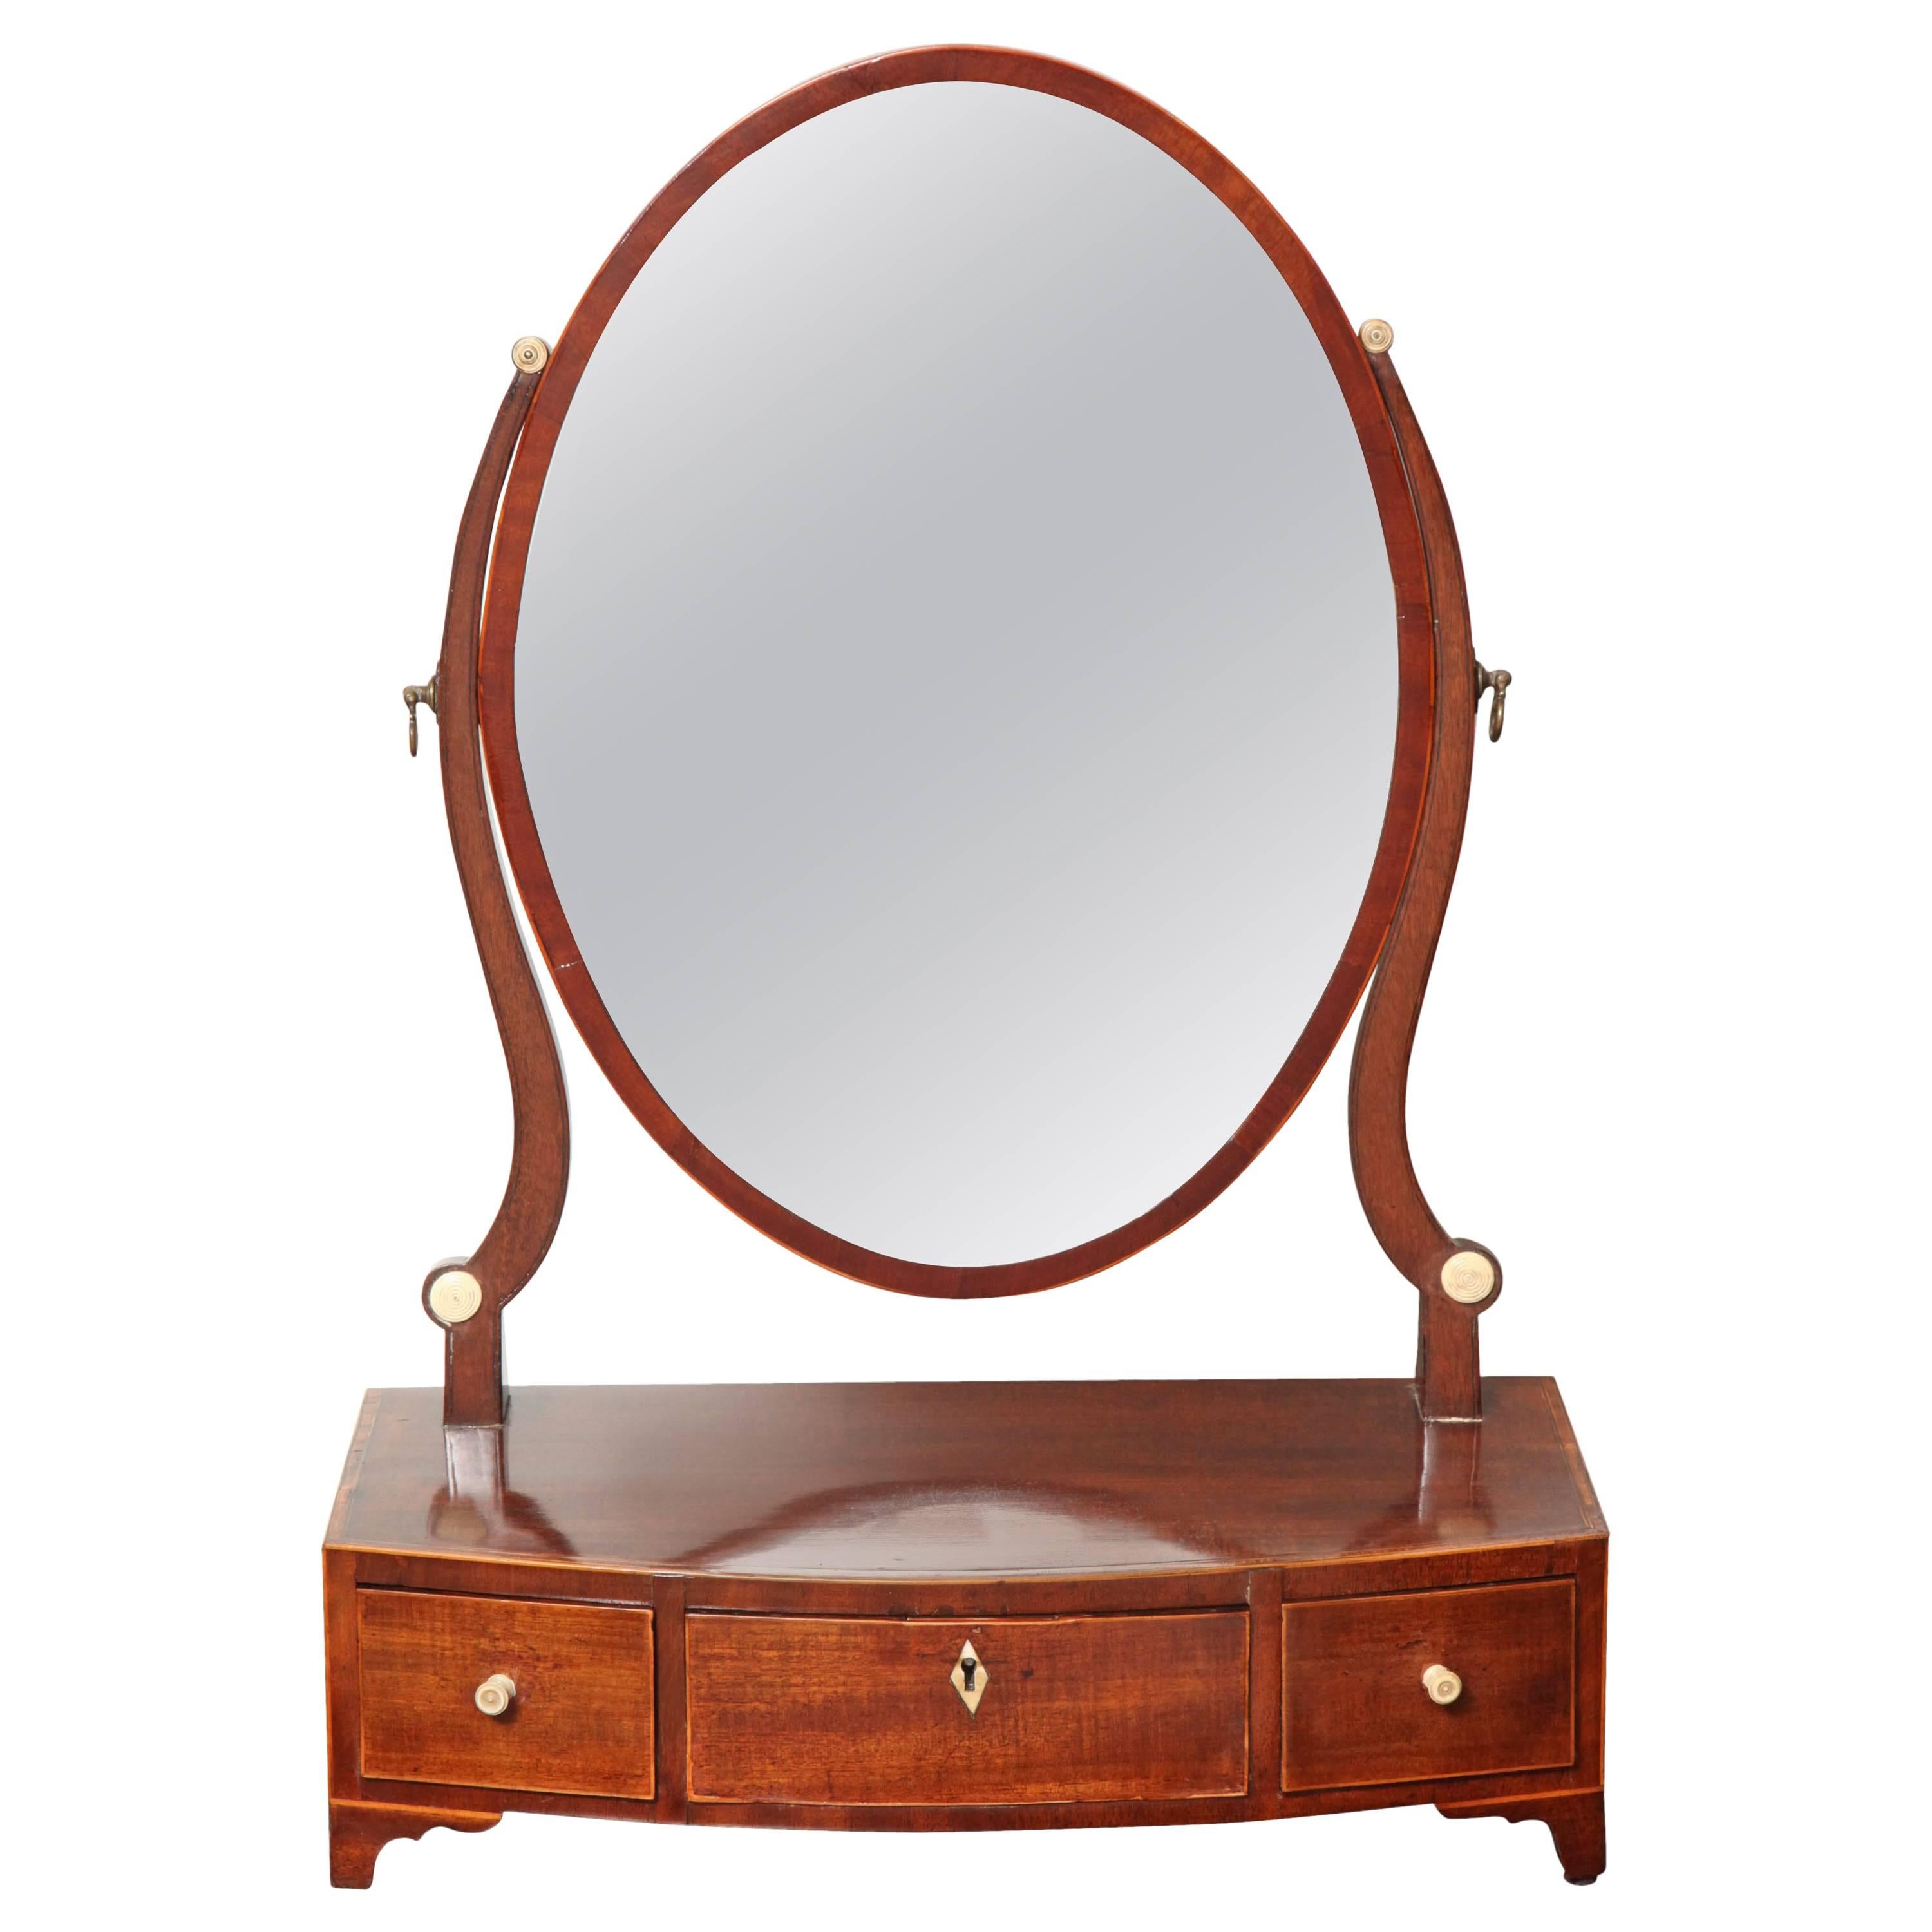 Early 19th Century English Regency, Mahogany Dressing Table Mirror